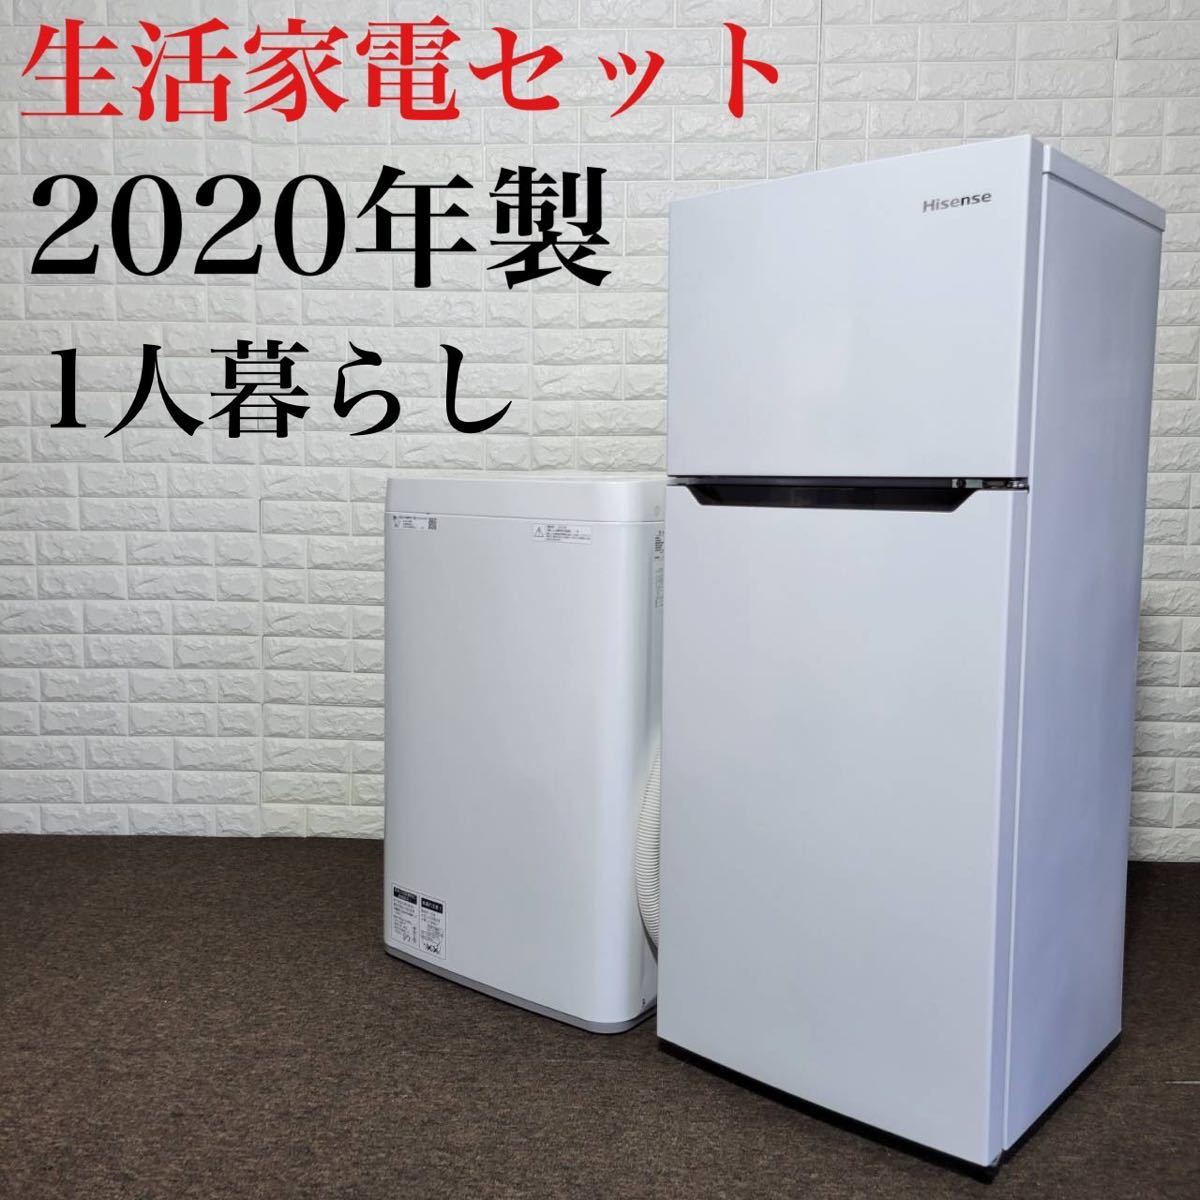 生活家電セット 冷蔵庫 洗濯機 2020年製 高年式 1人暮らし M0192